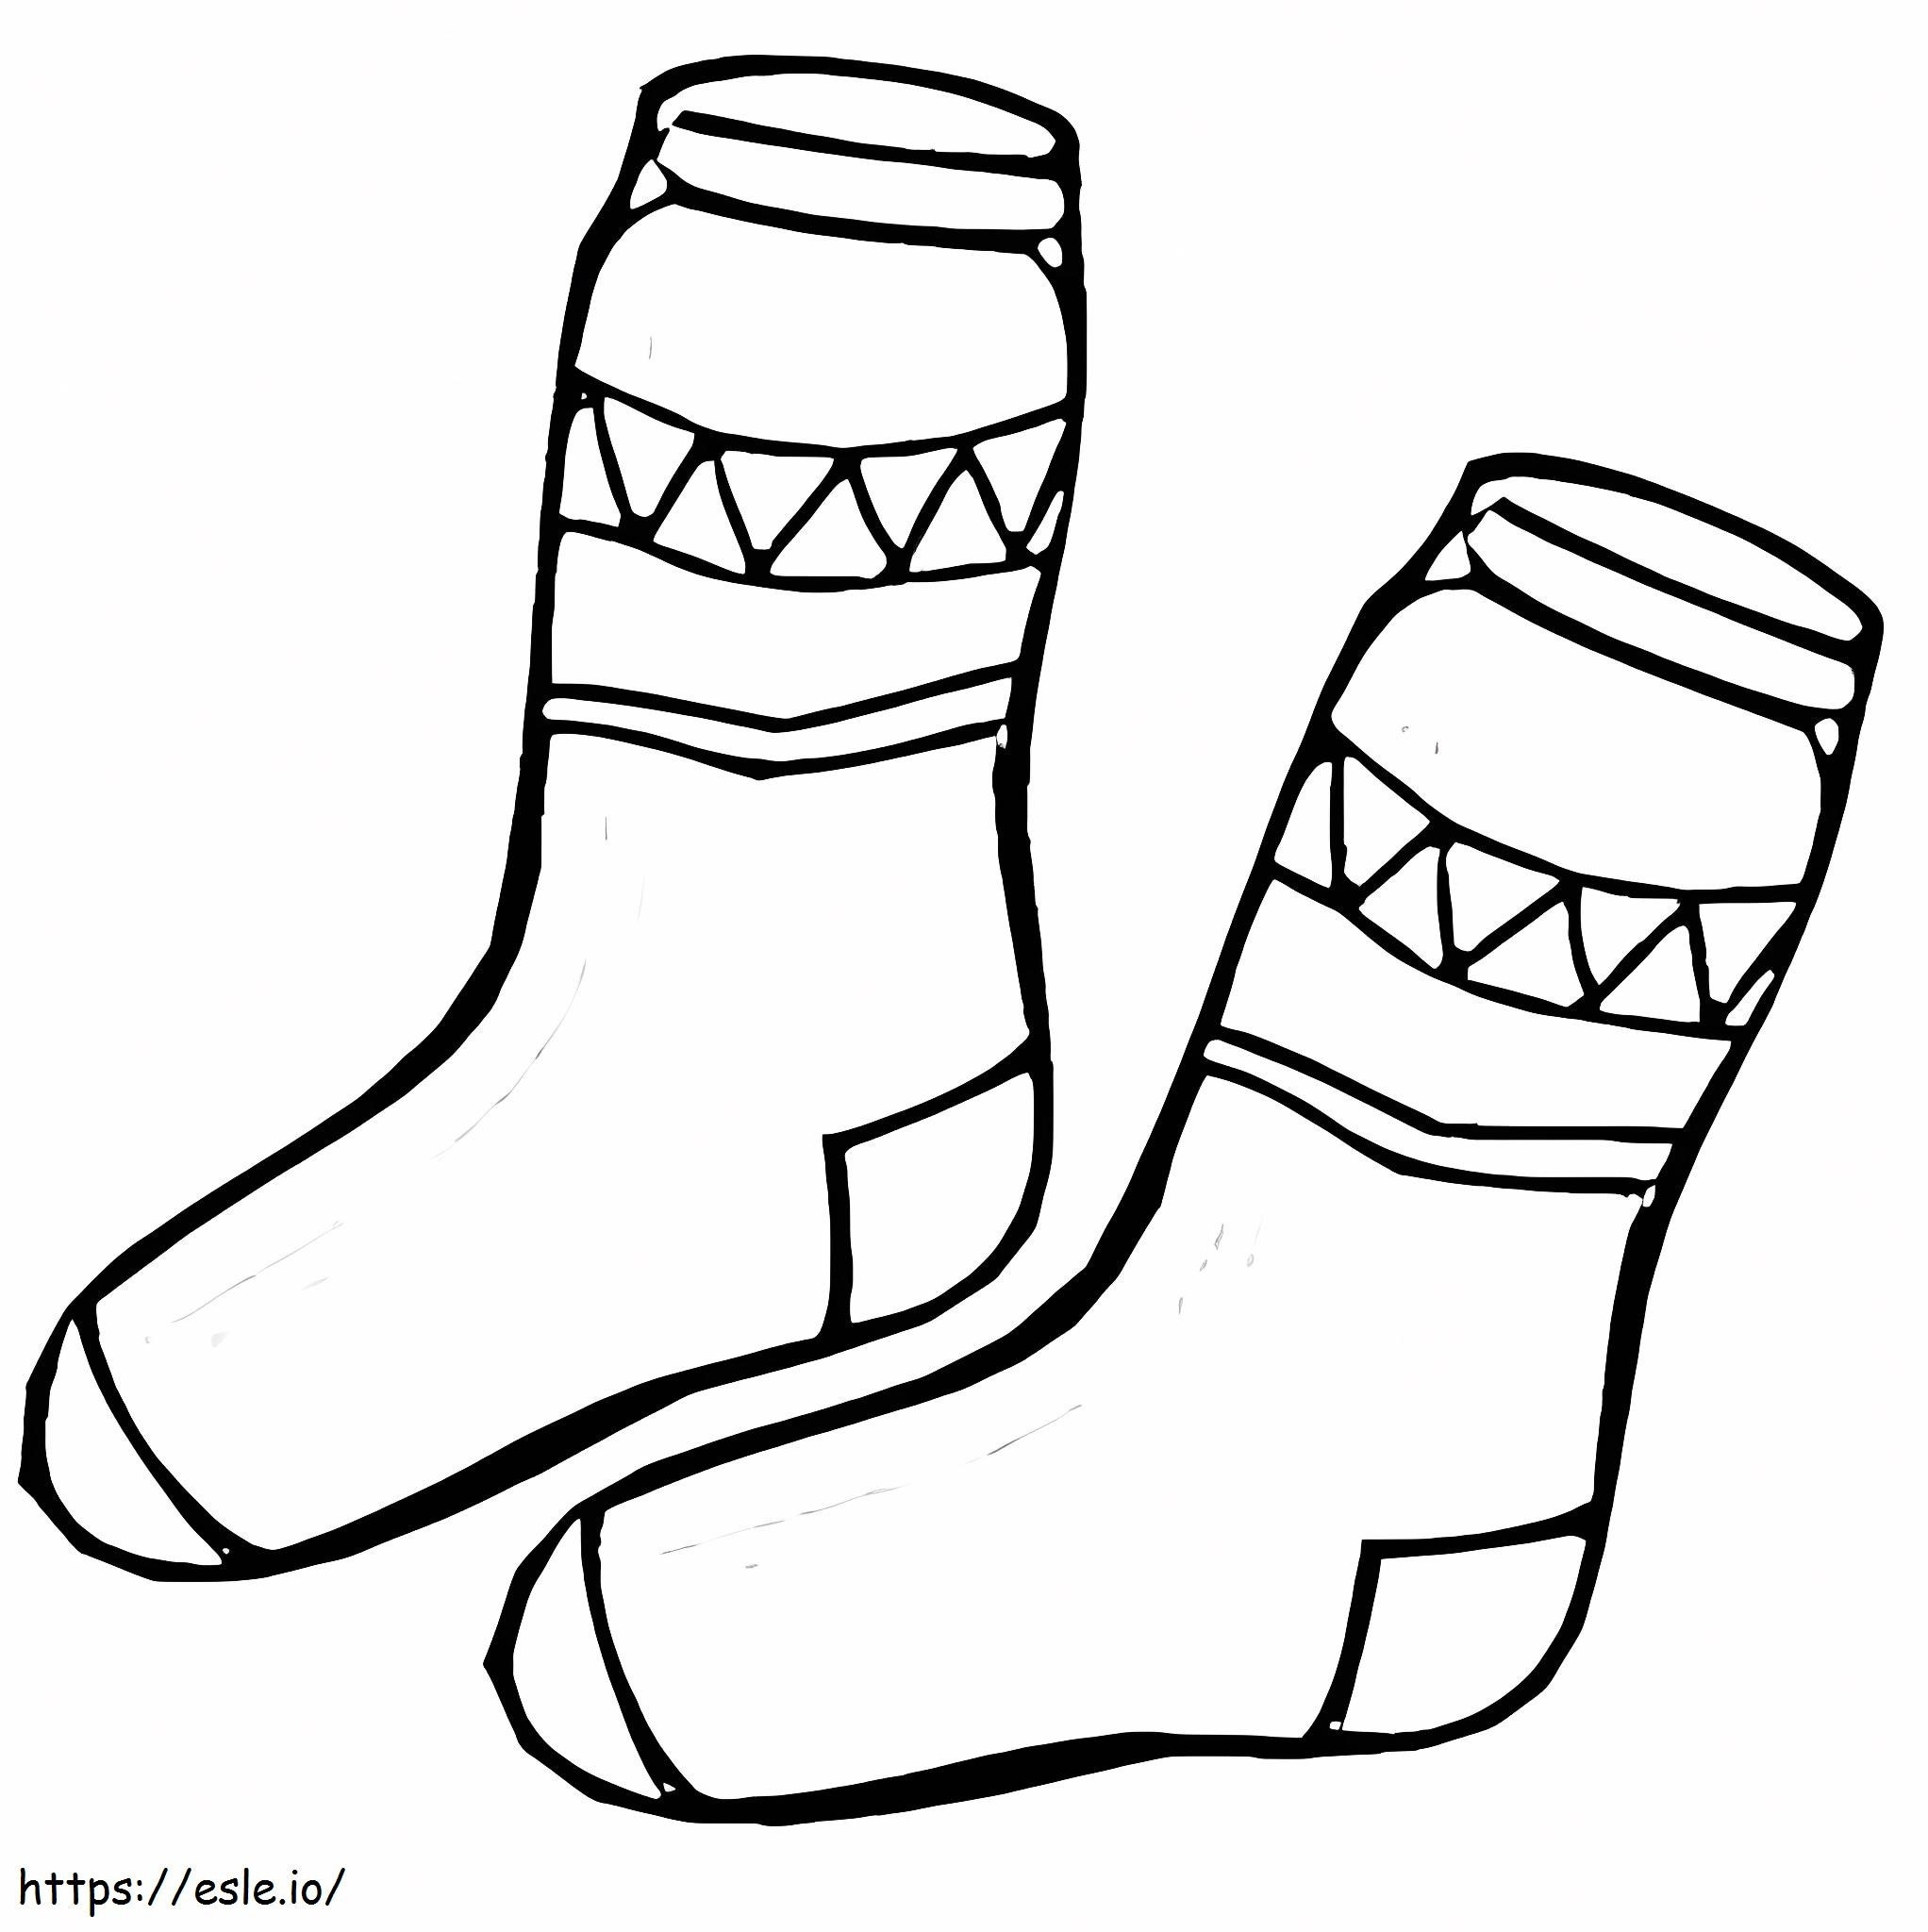 Zwei Socken ausmalbilder